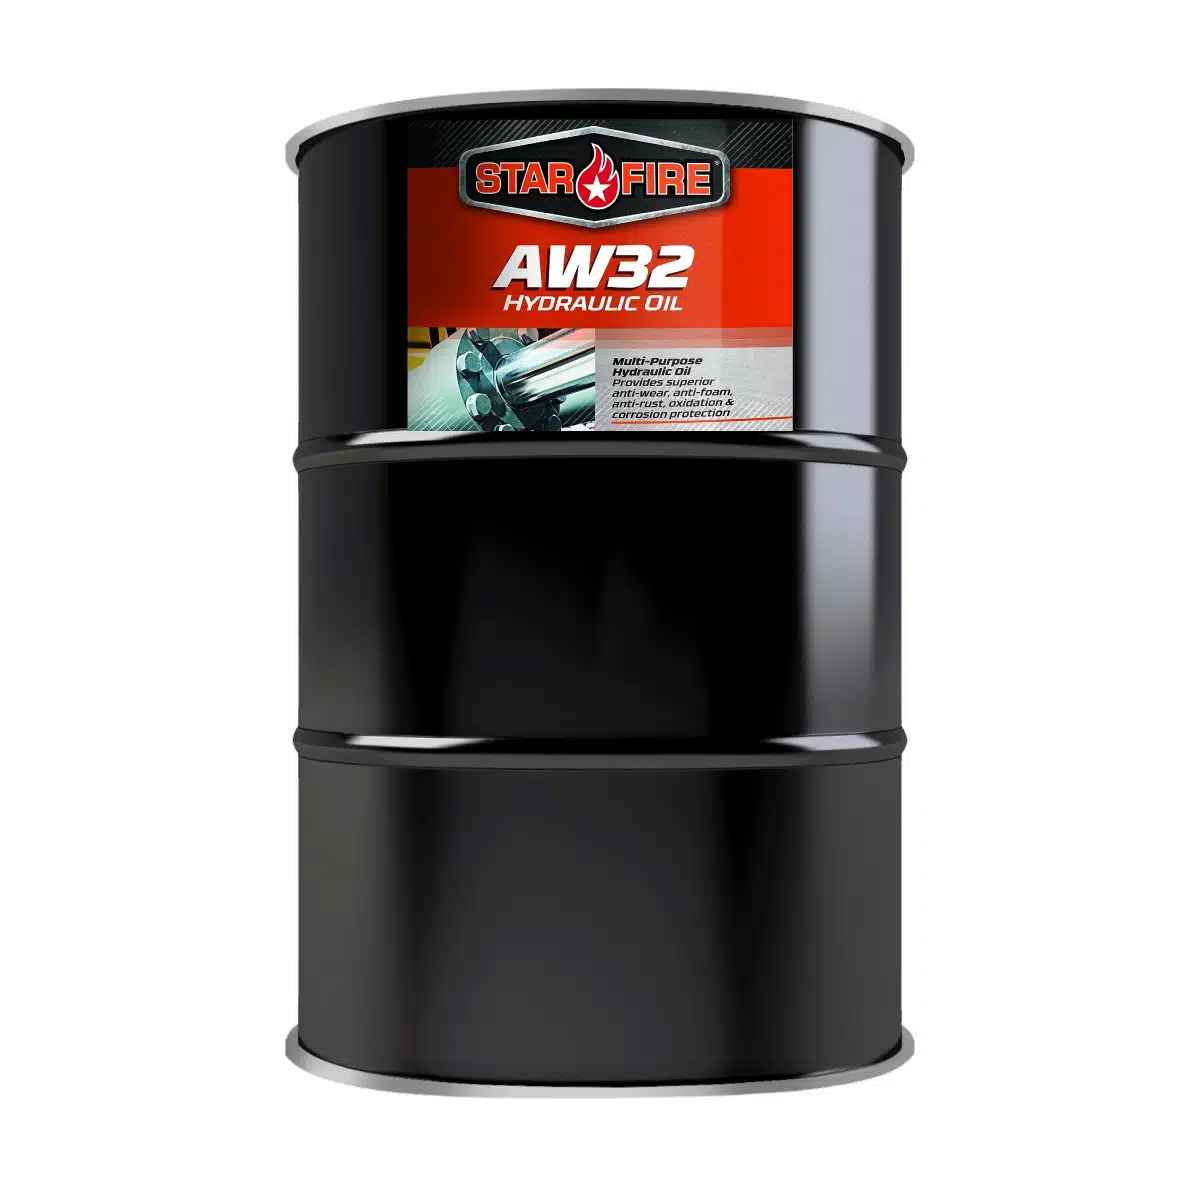 AW32 Hydraulic Oil 55 Gallon Drum